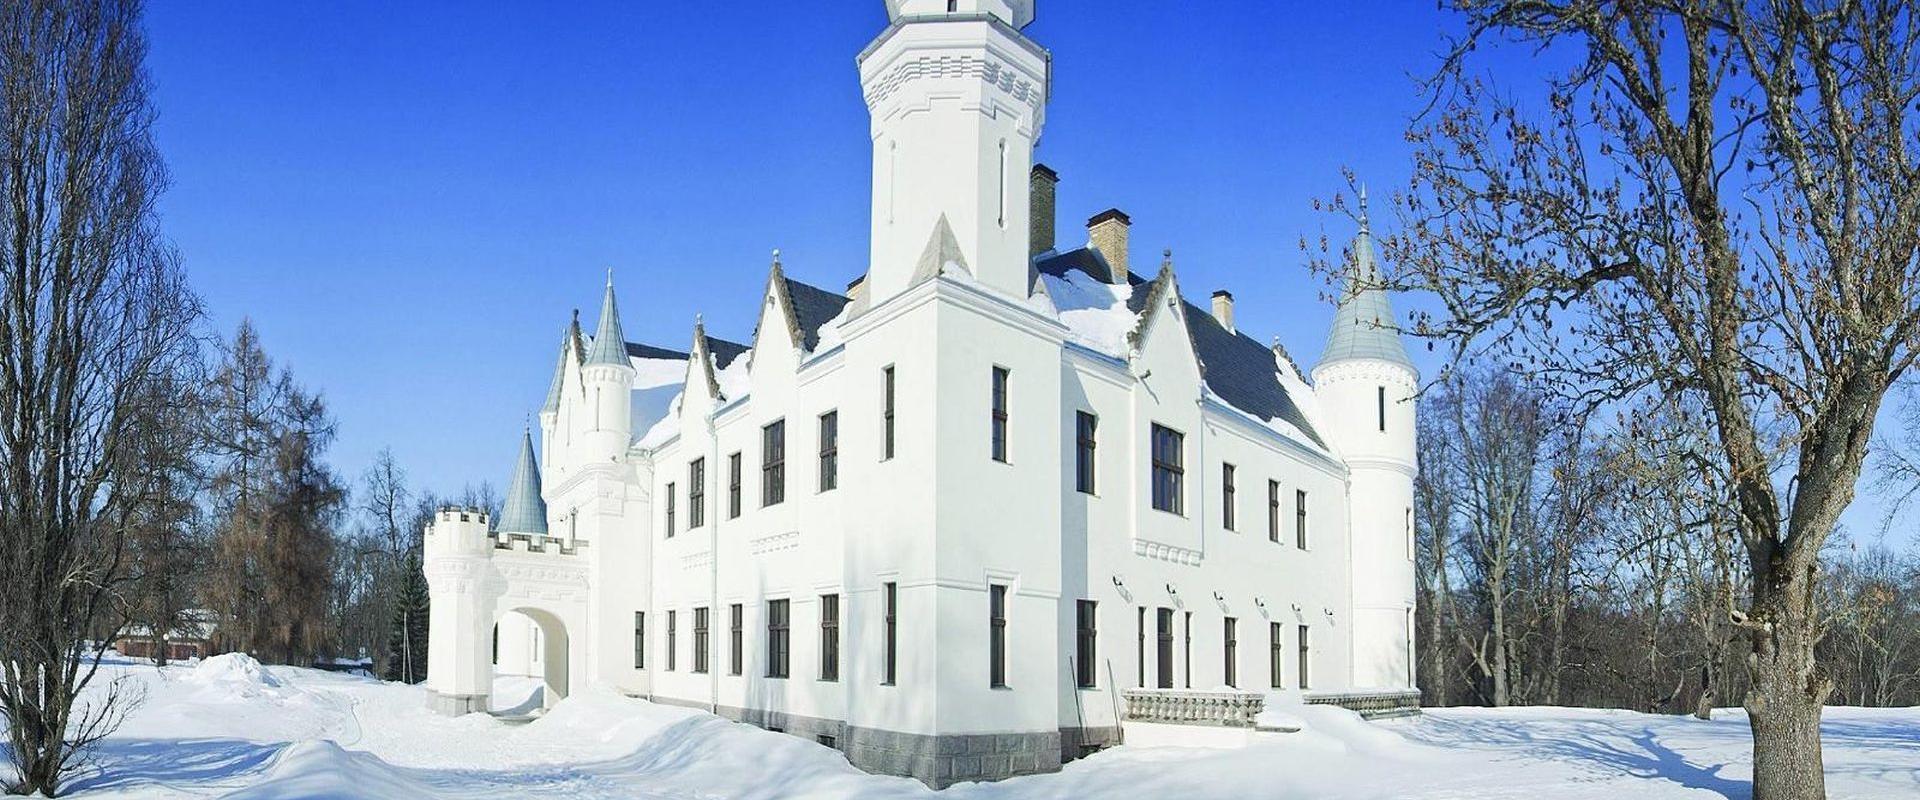 Alatskivi Castle in snowy winter